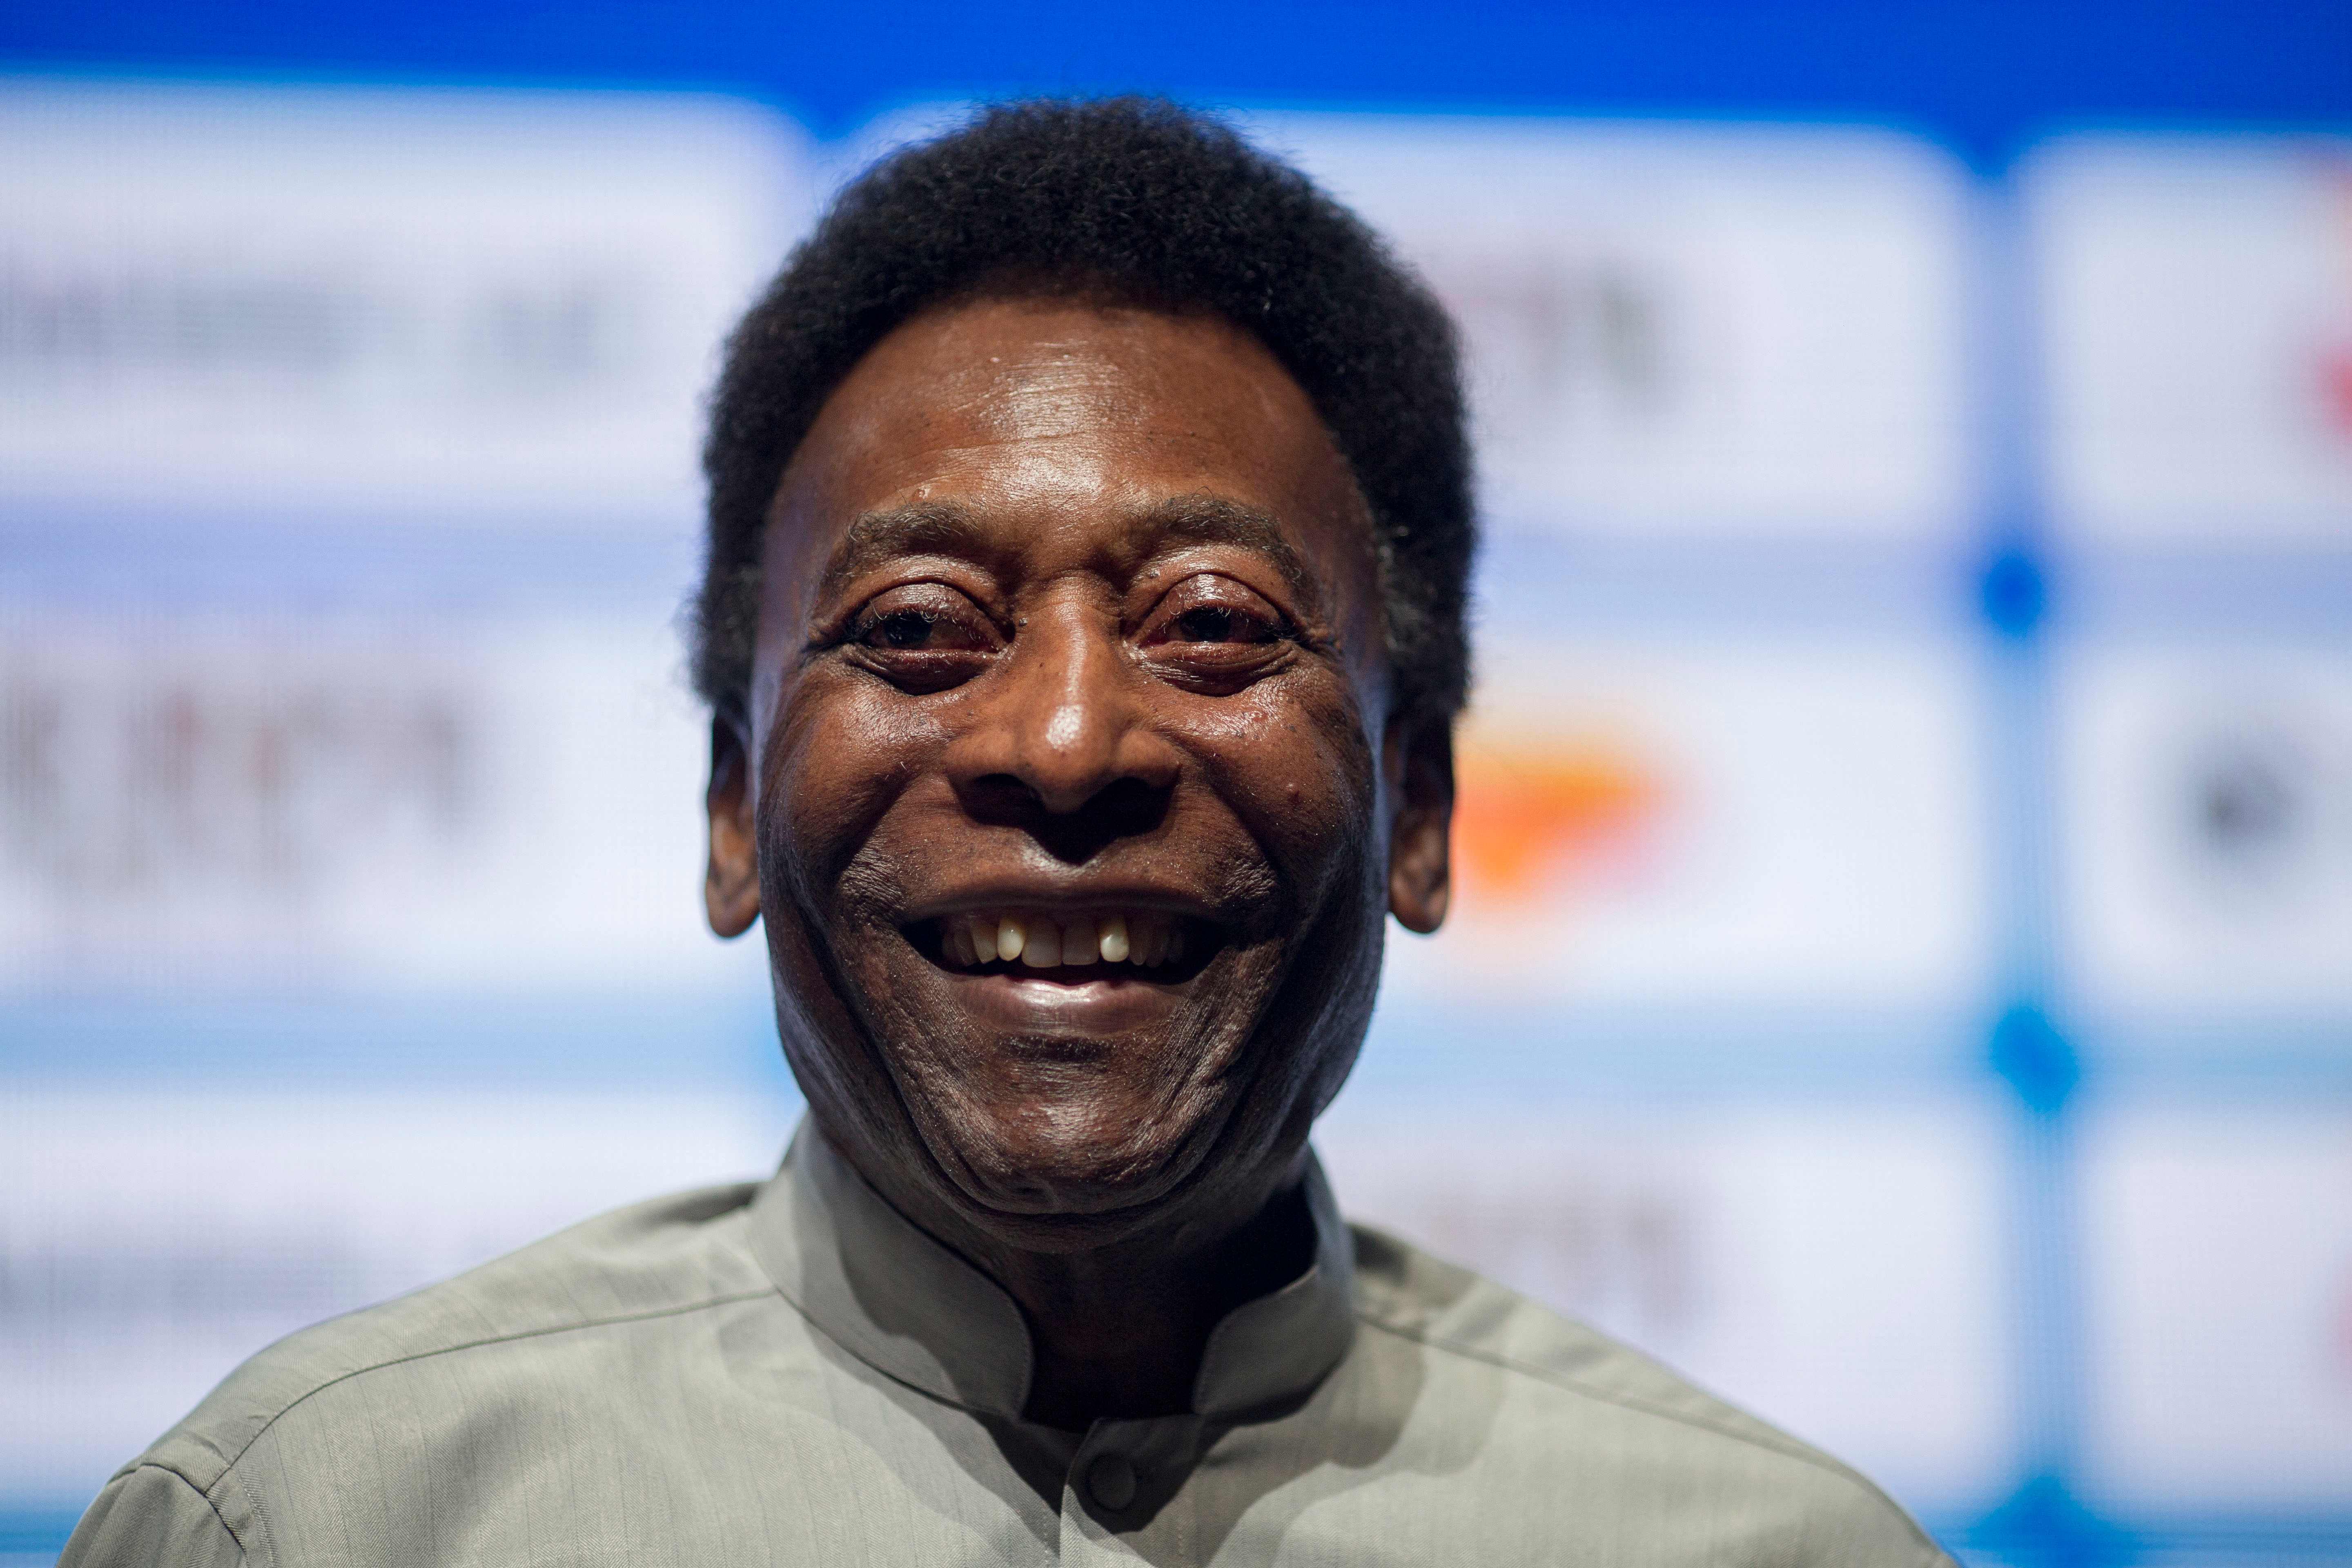 Muere Pelé a los 82 años.(Foto Prensa Libre: MAURO PIMENTEL / AFP)